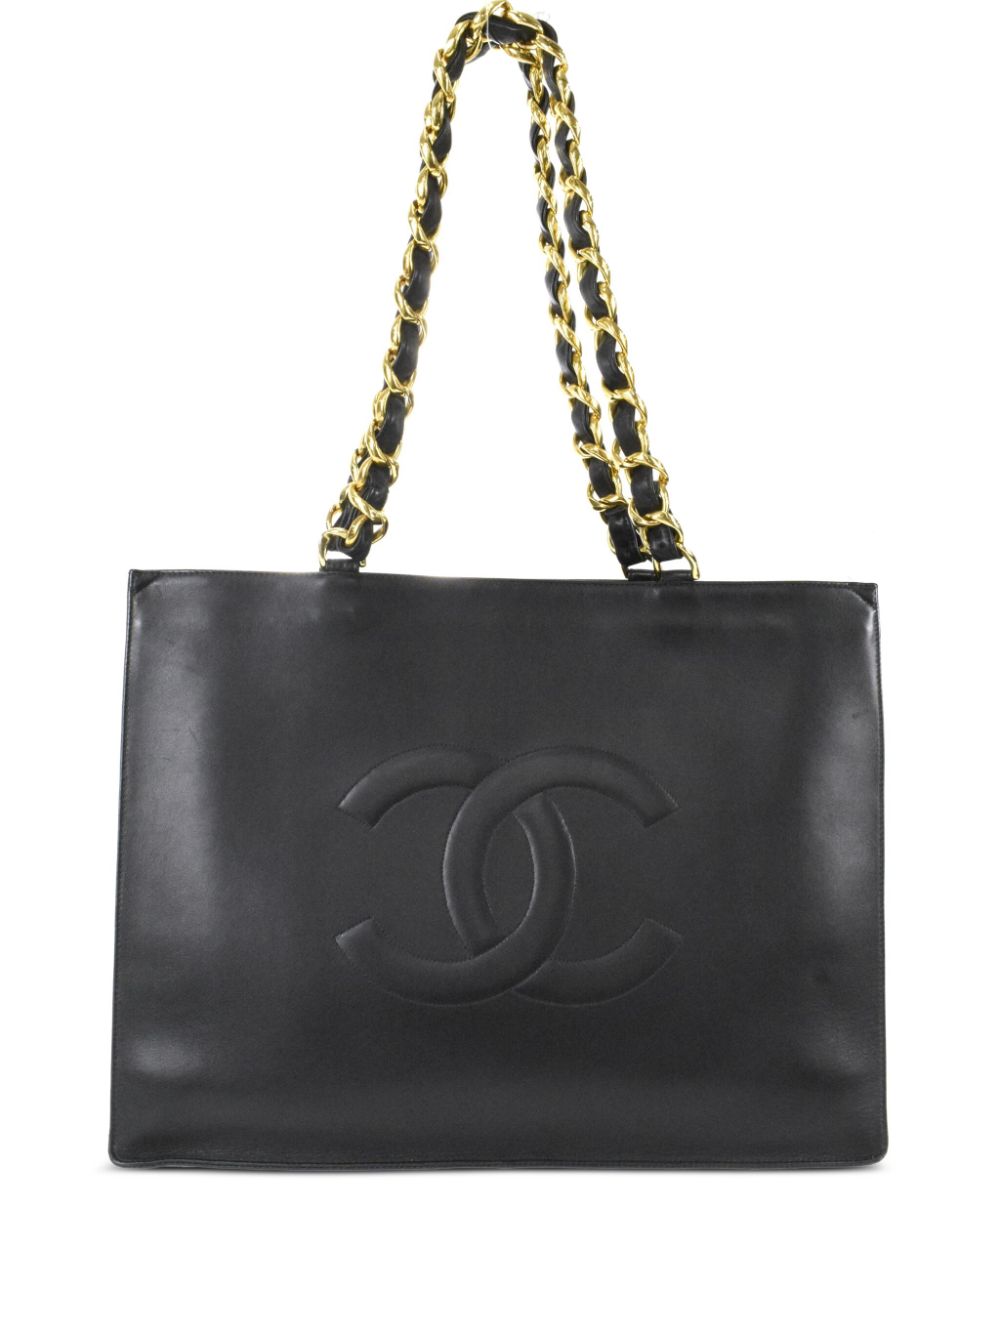 Chanel Vintage CC Chain Tote - Black Totes, Handbags - CHA752765